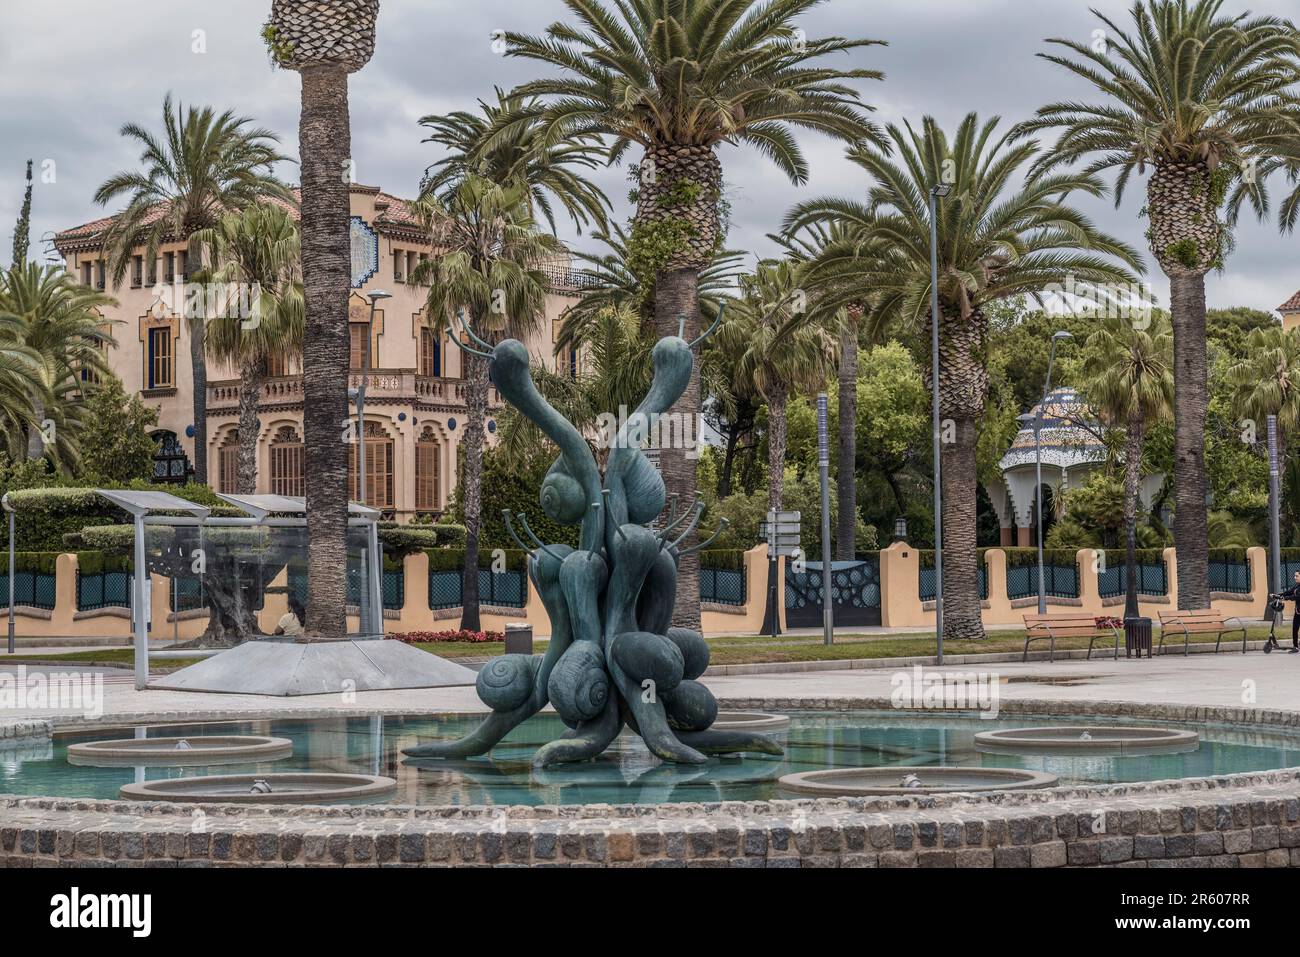 Brunnen und Palmen an der Promenade von Jaime I, dem Conquistador in der Stadt Salou, Costa Daurada, Provinz Tarragona, Katalonien, Spanien. Stockfoto